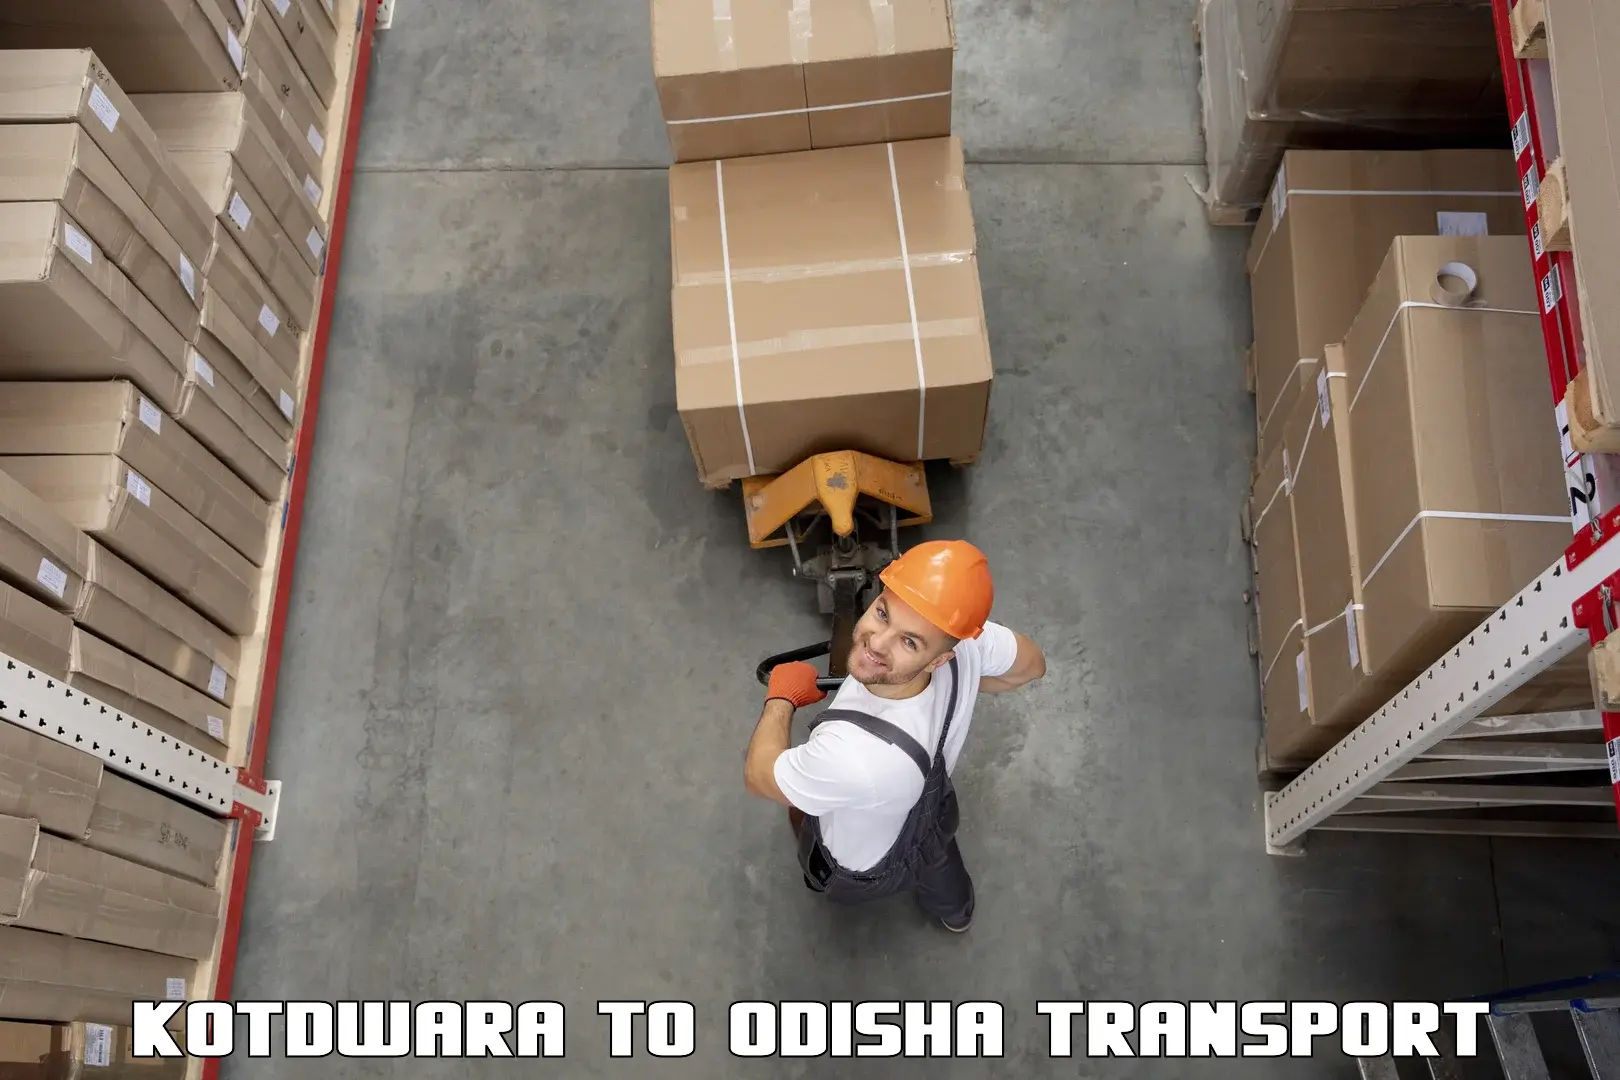 Luggage transport services Kotdwara to Adaspur